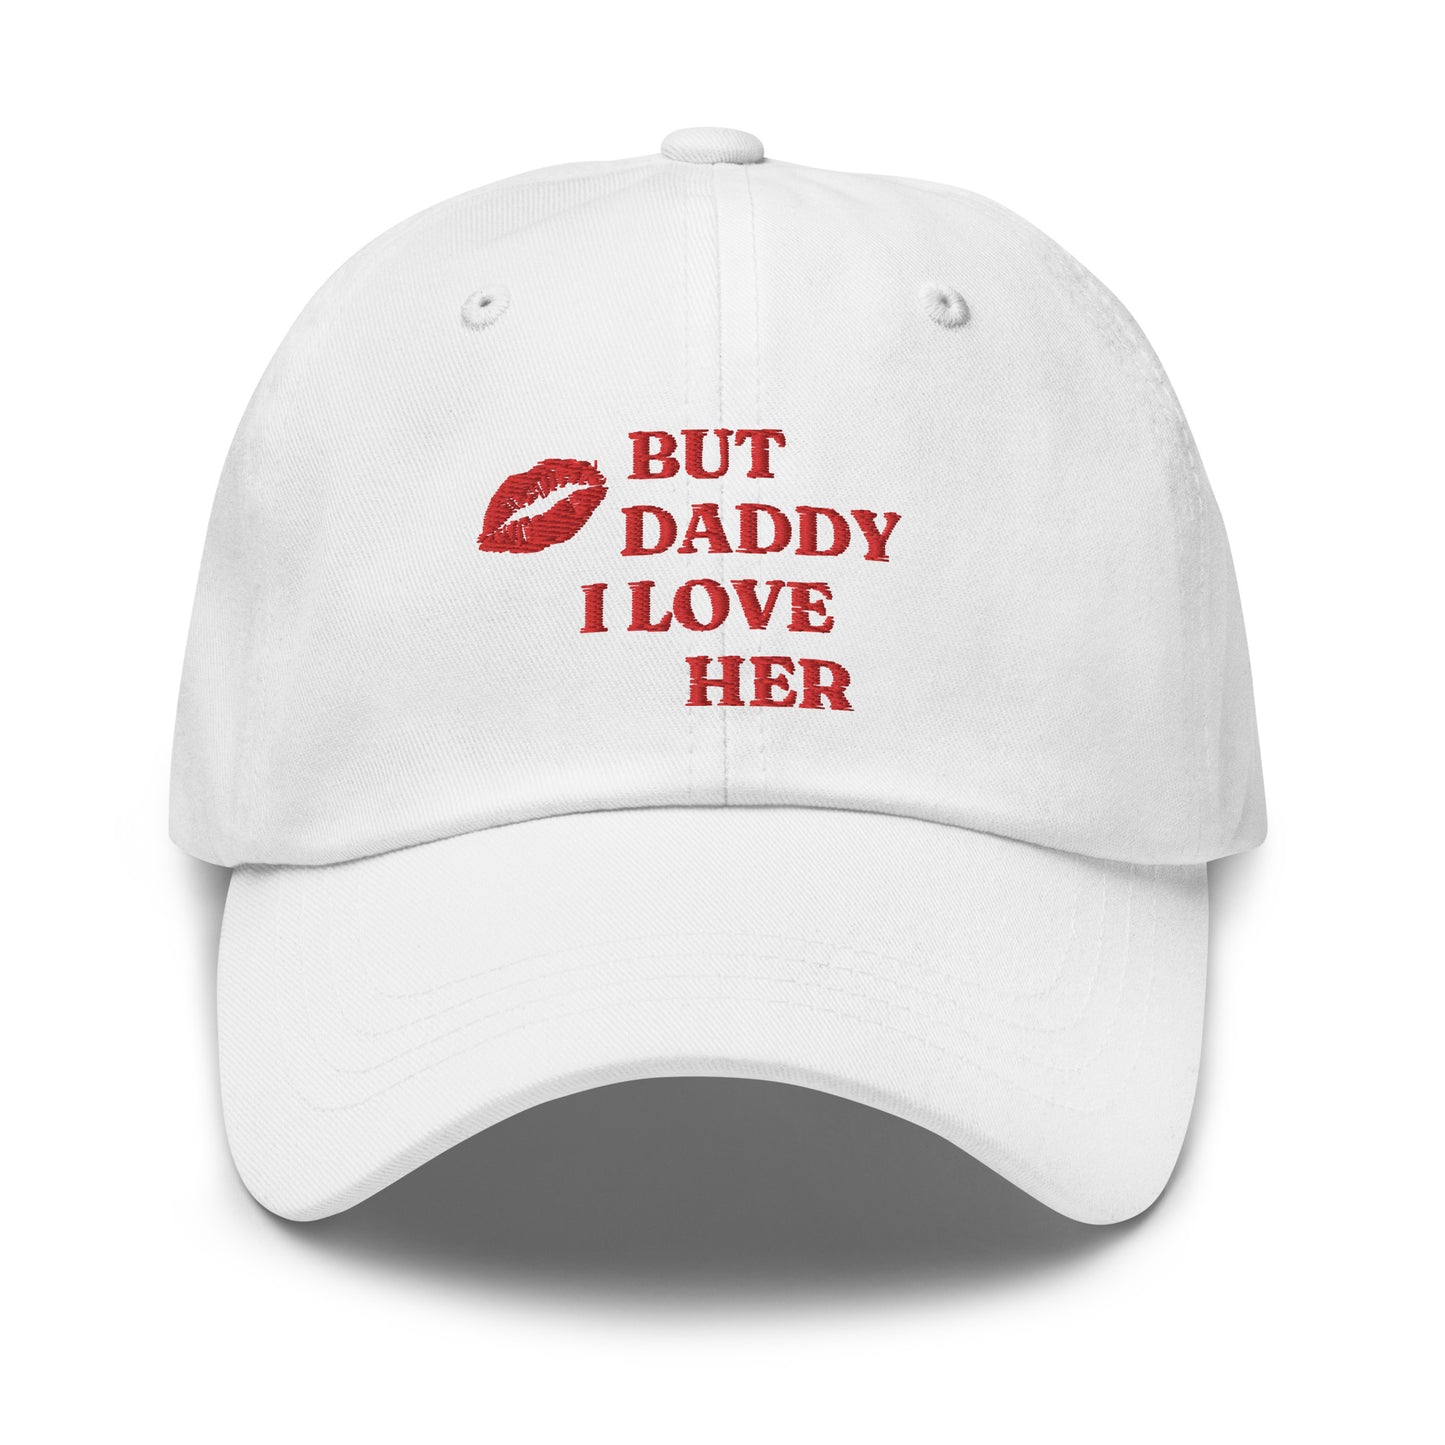 "DADDY" dat hat